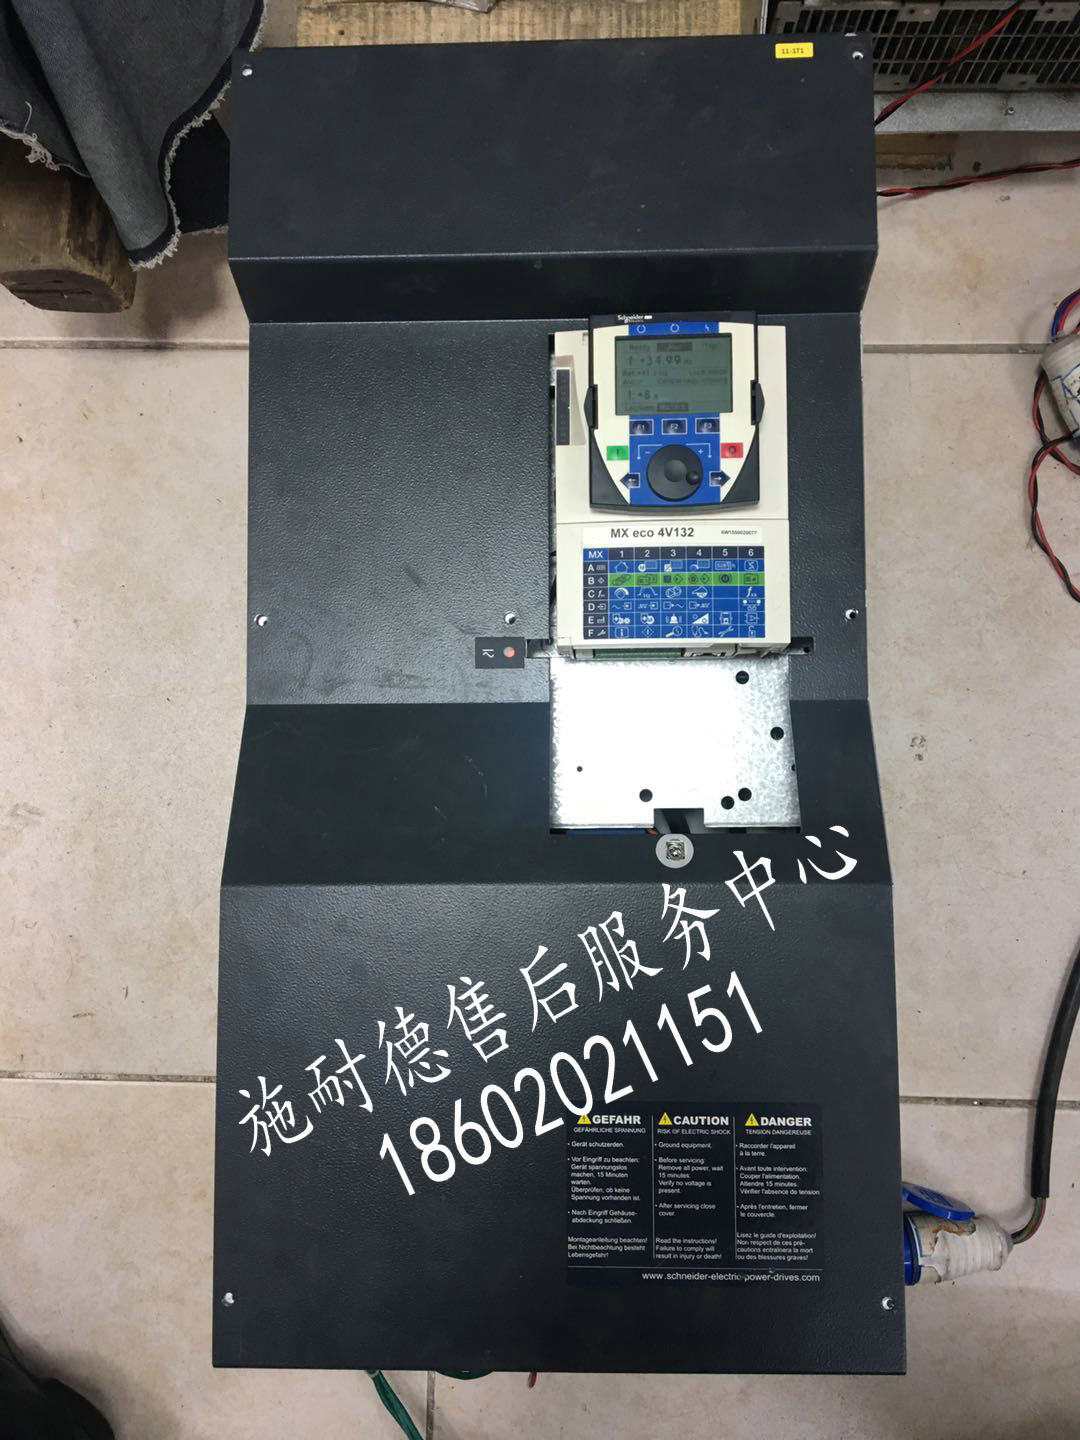 贵州省、云南省海瑞克盾构机PDRIVE eco 4V160变频器维修